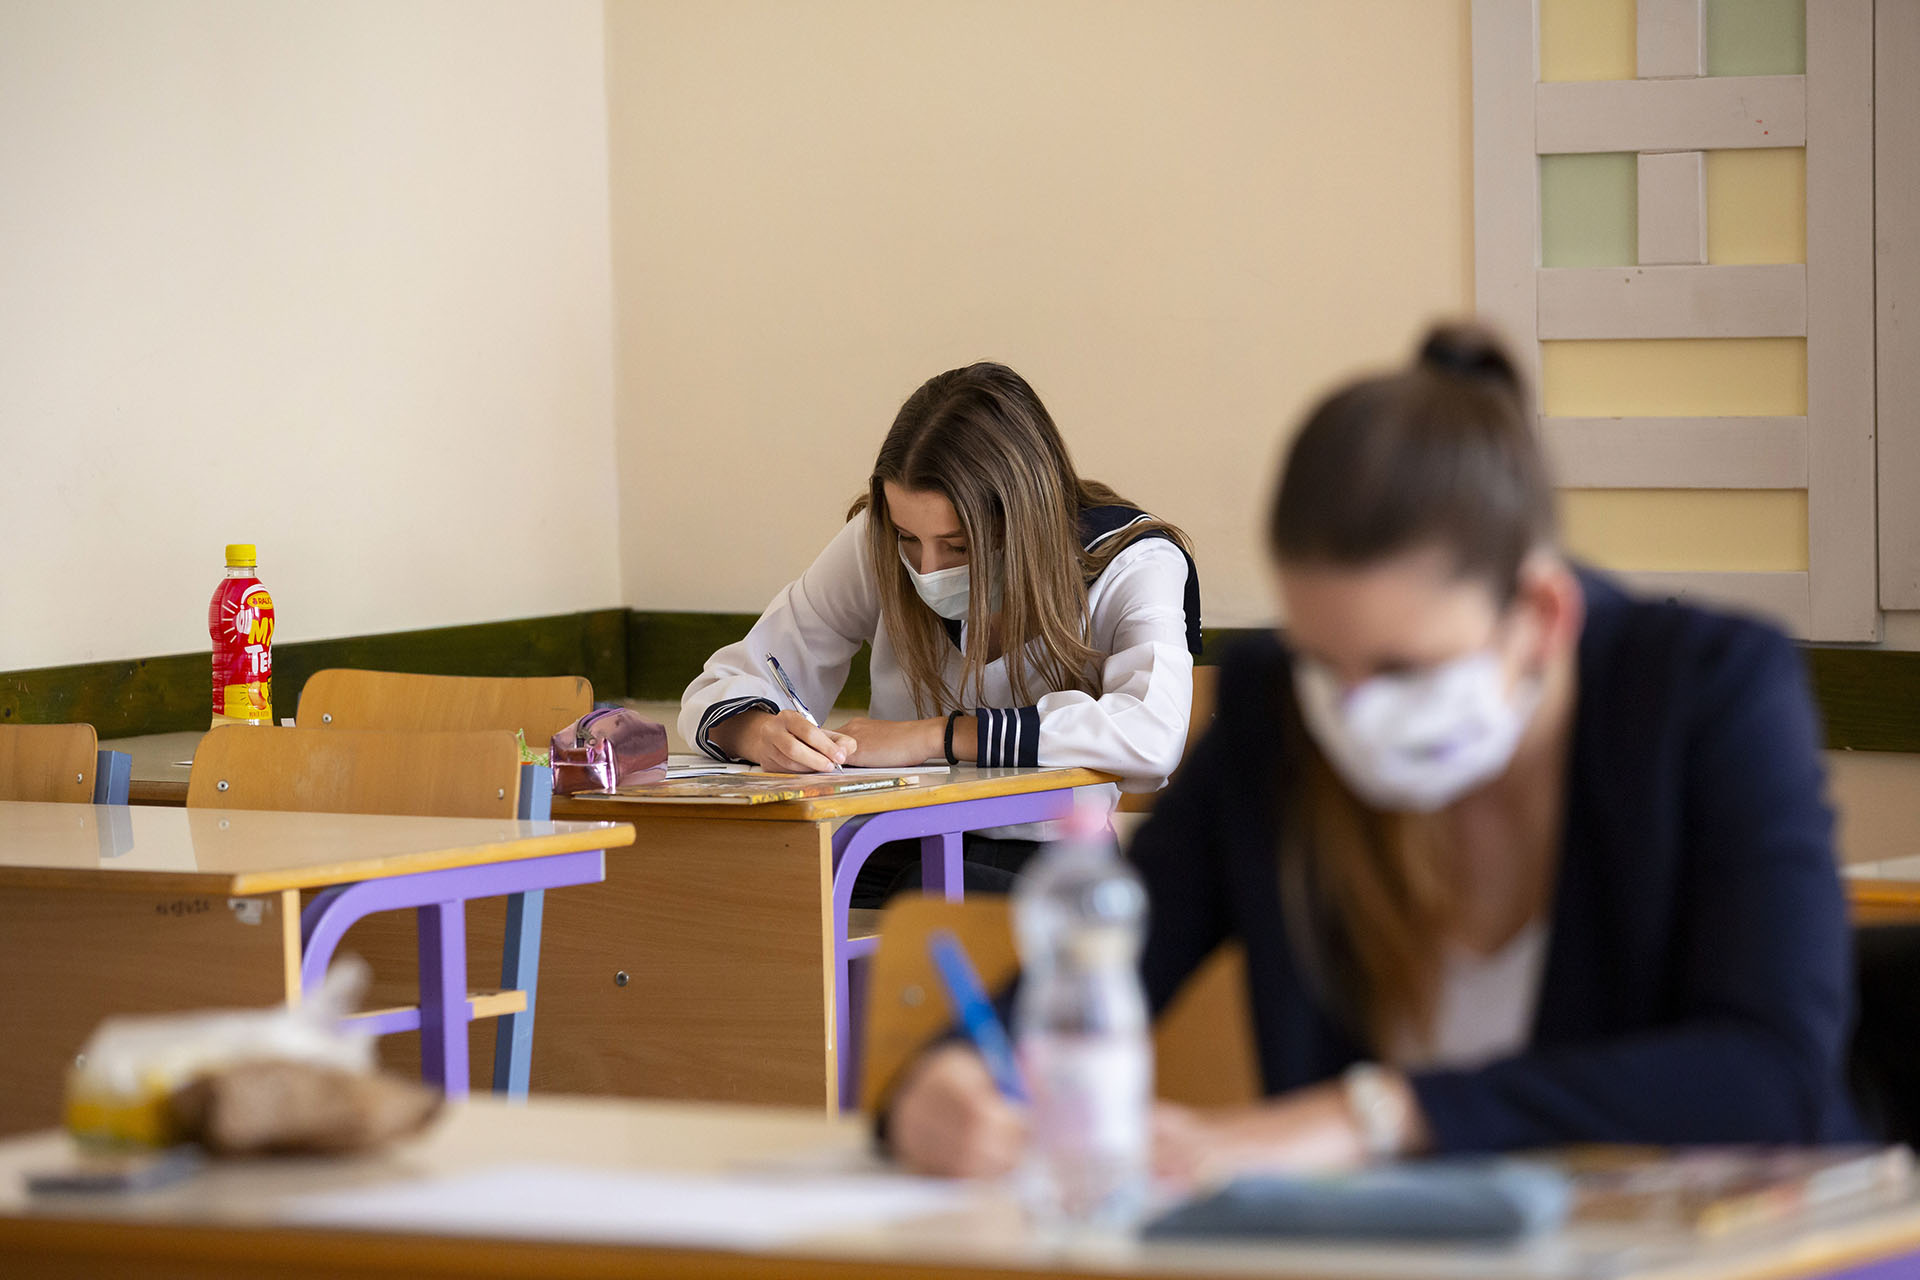 Népszava: A kormány változtatott az iskolai karanténszabályokon